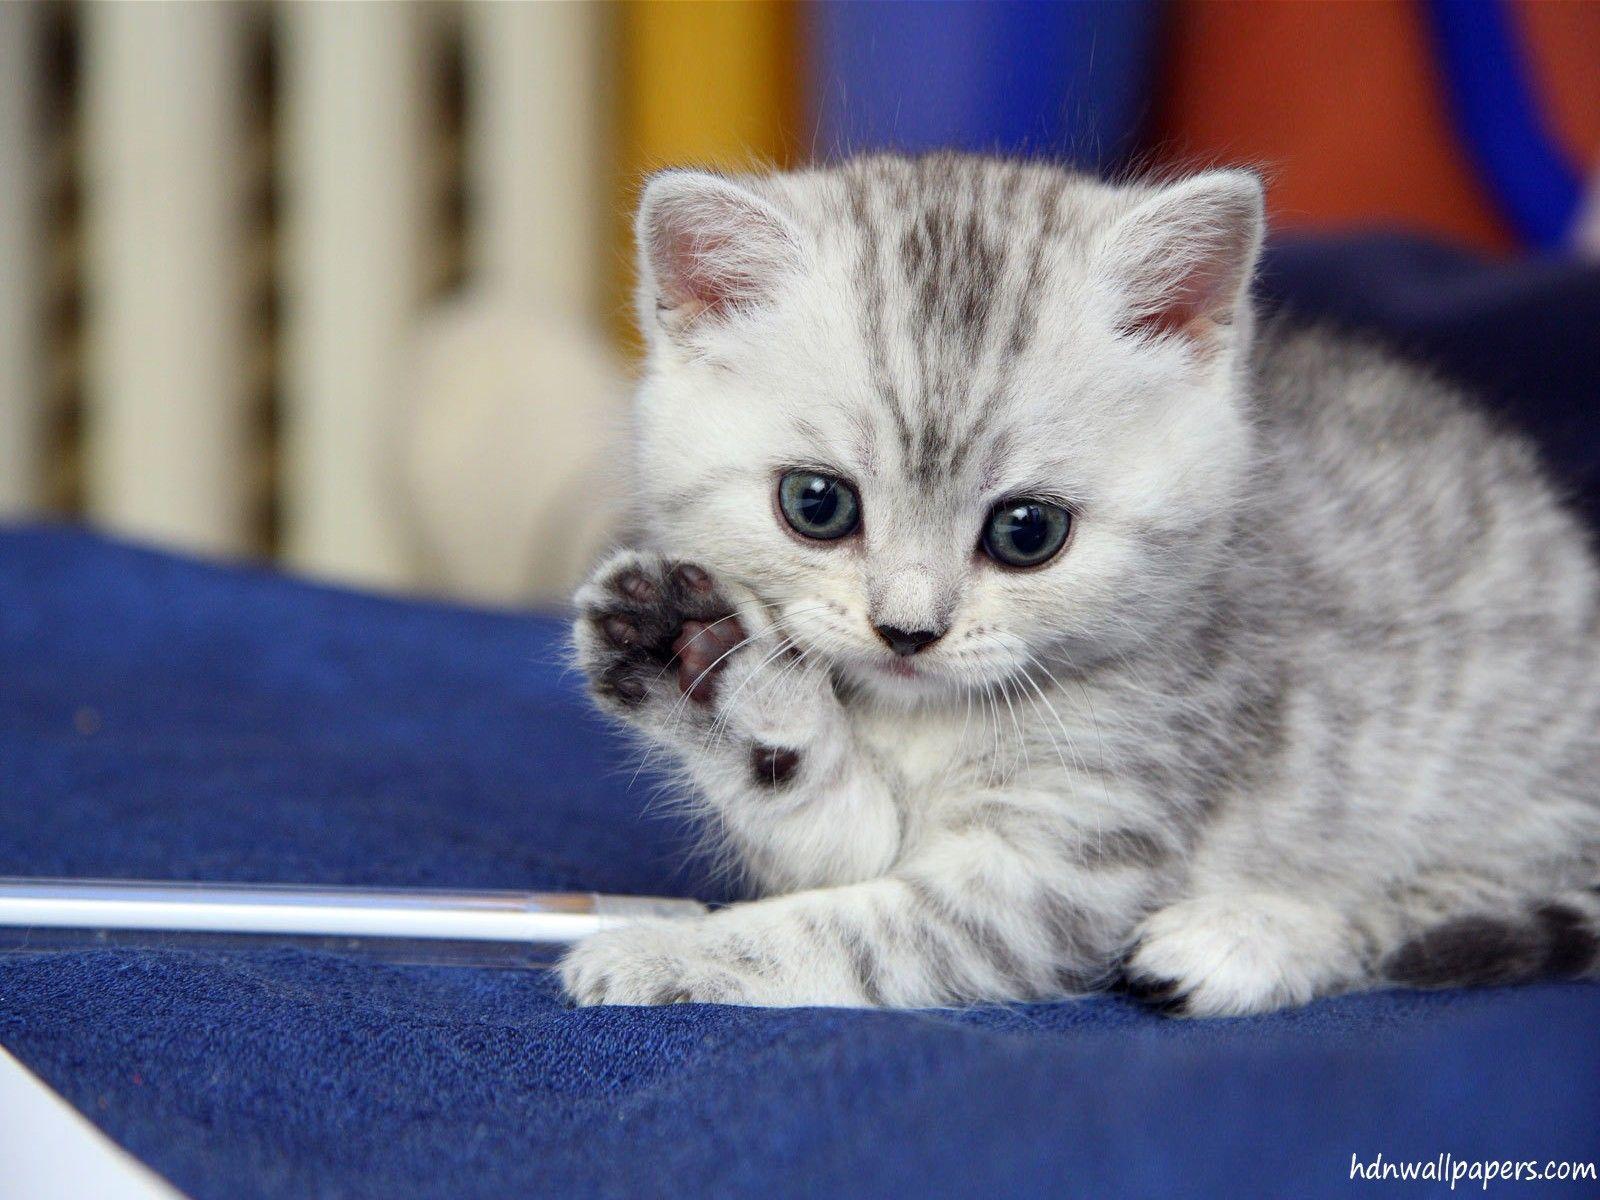 Cute Kittens Wallpaper For Mobile